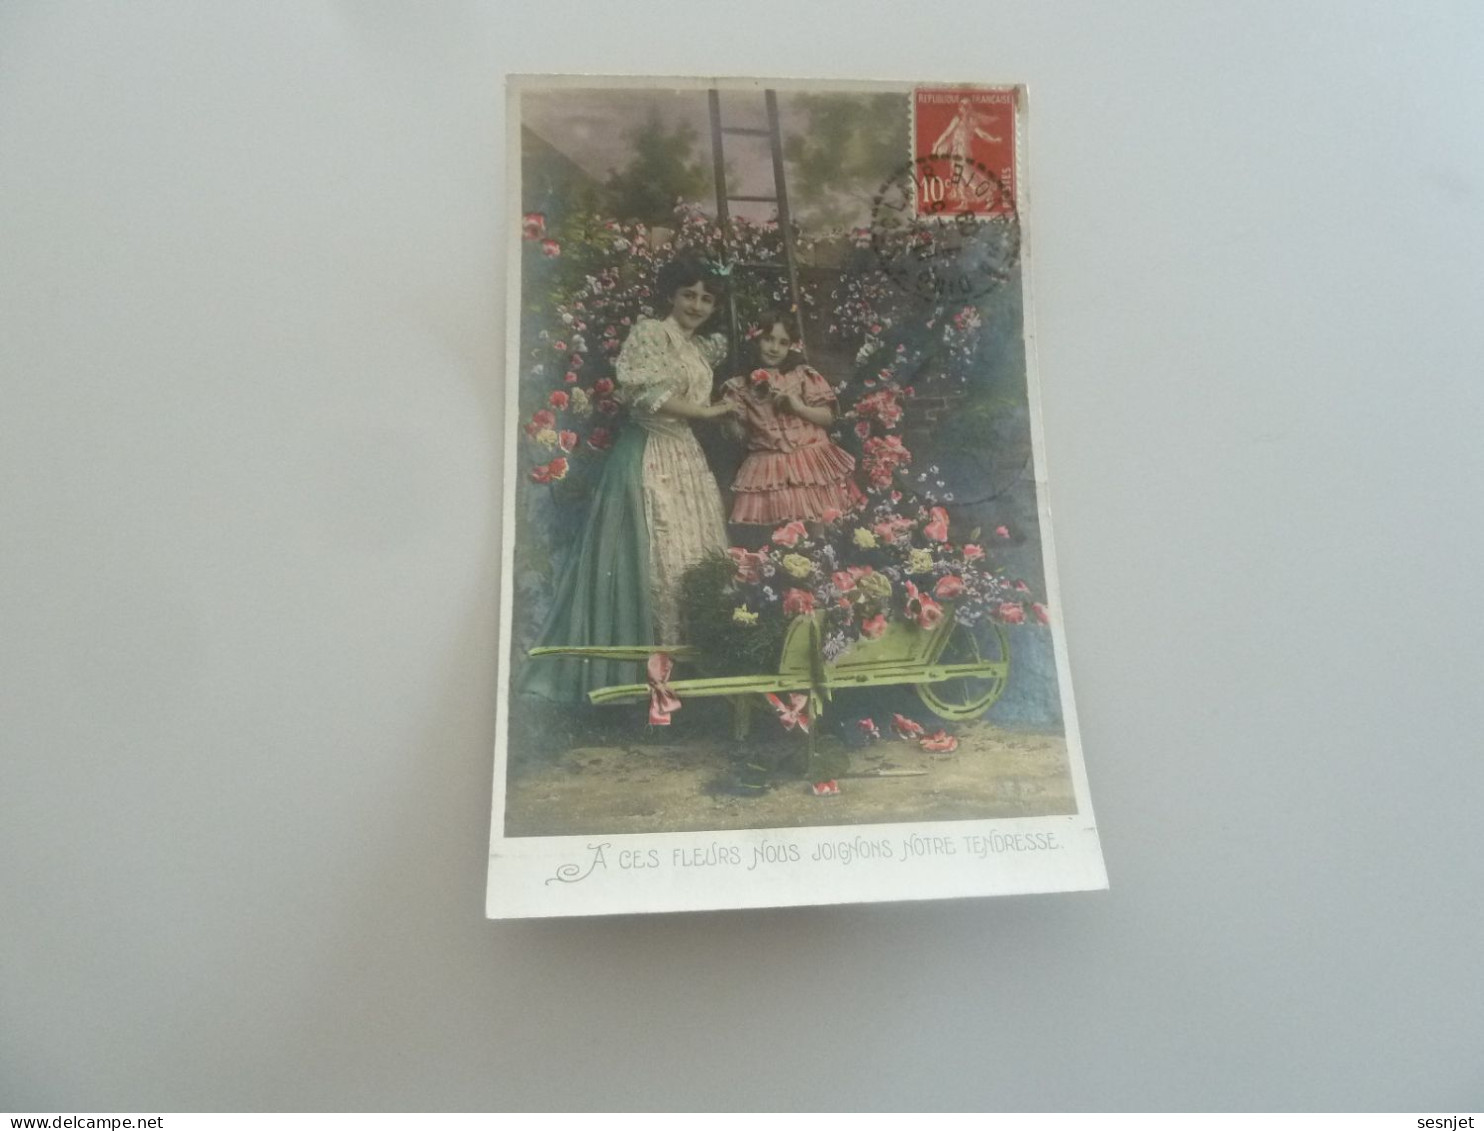 Dingy Saint-Clair - A Ces Fleurs Nous Joignons Notre Tendresse - 581 - Yt 135 - Editions A.s - Année 1909 - - Fête Des Mères